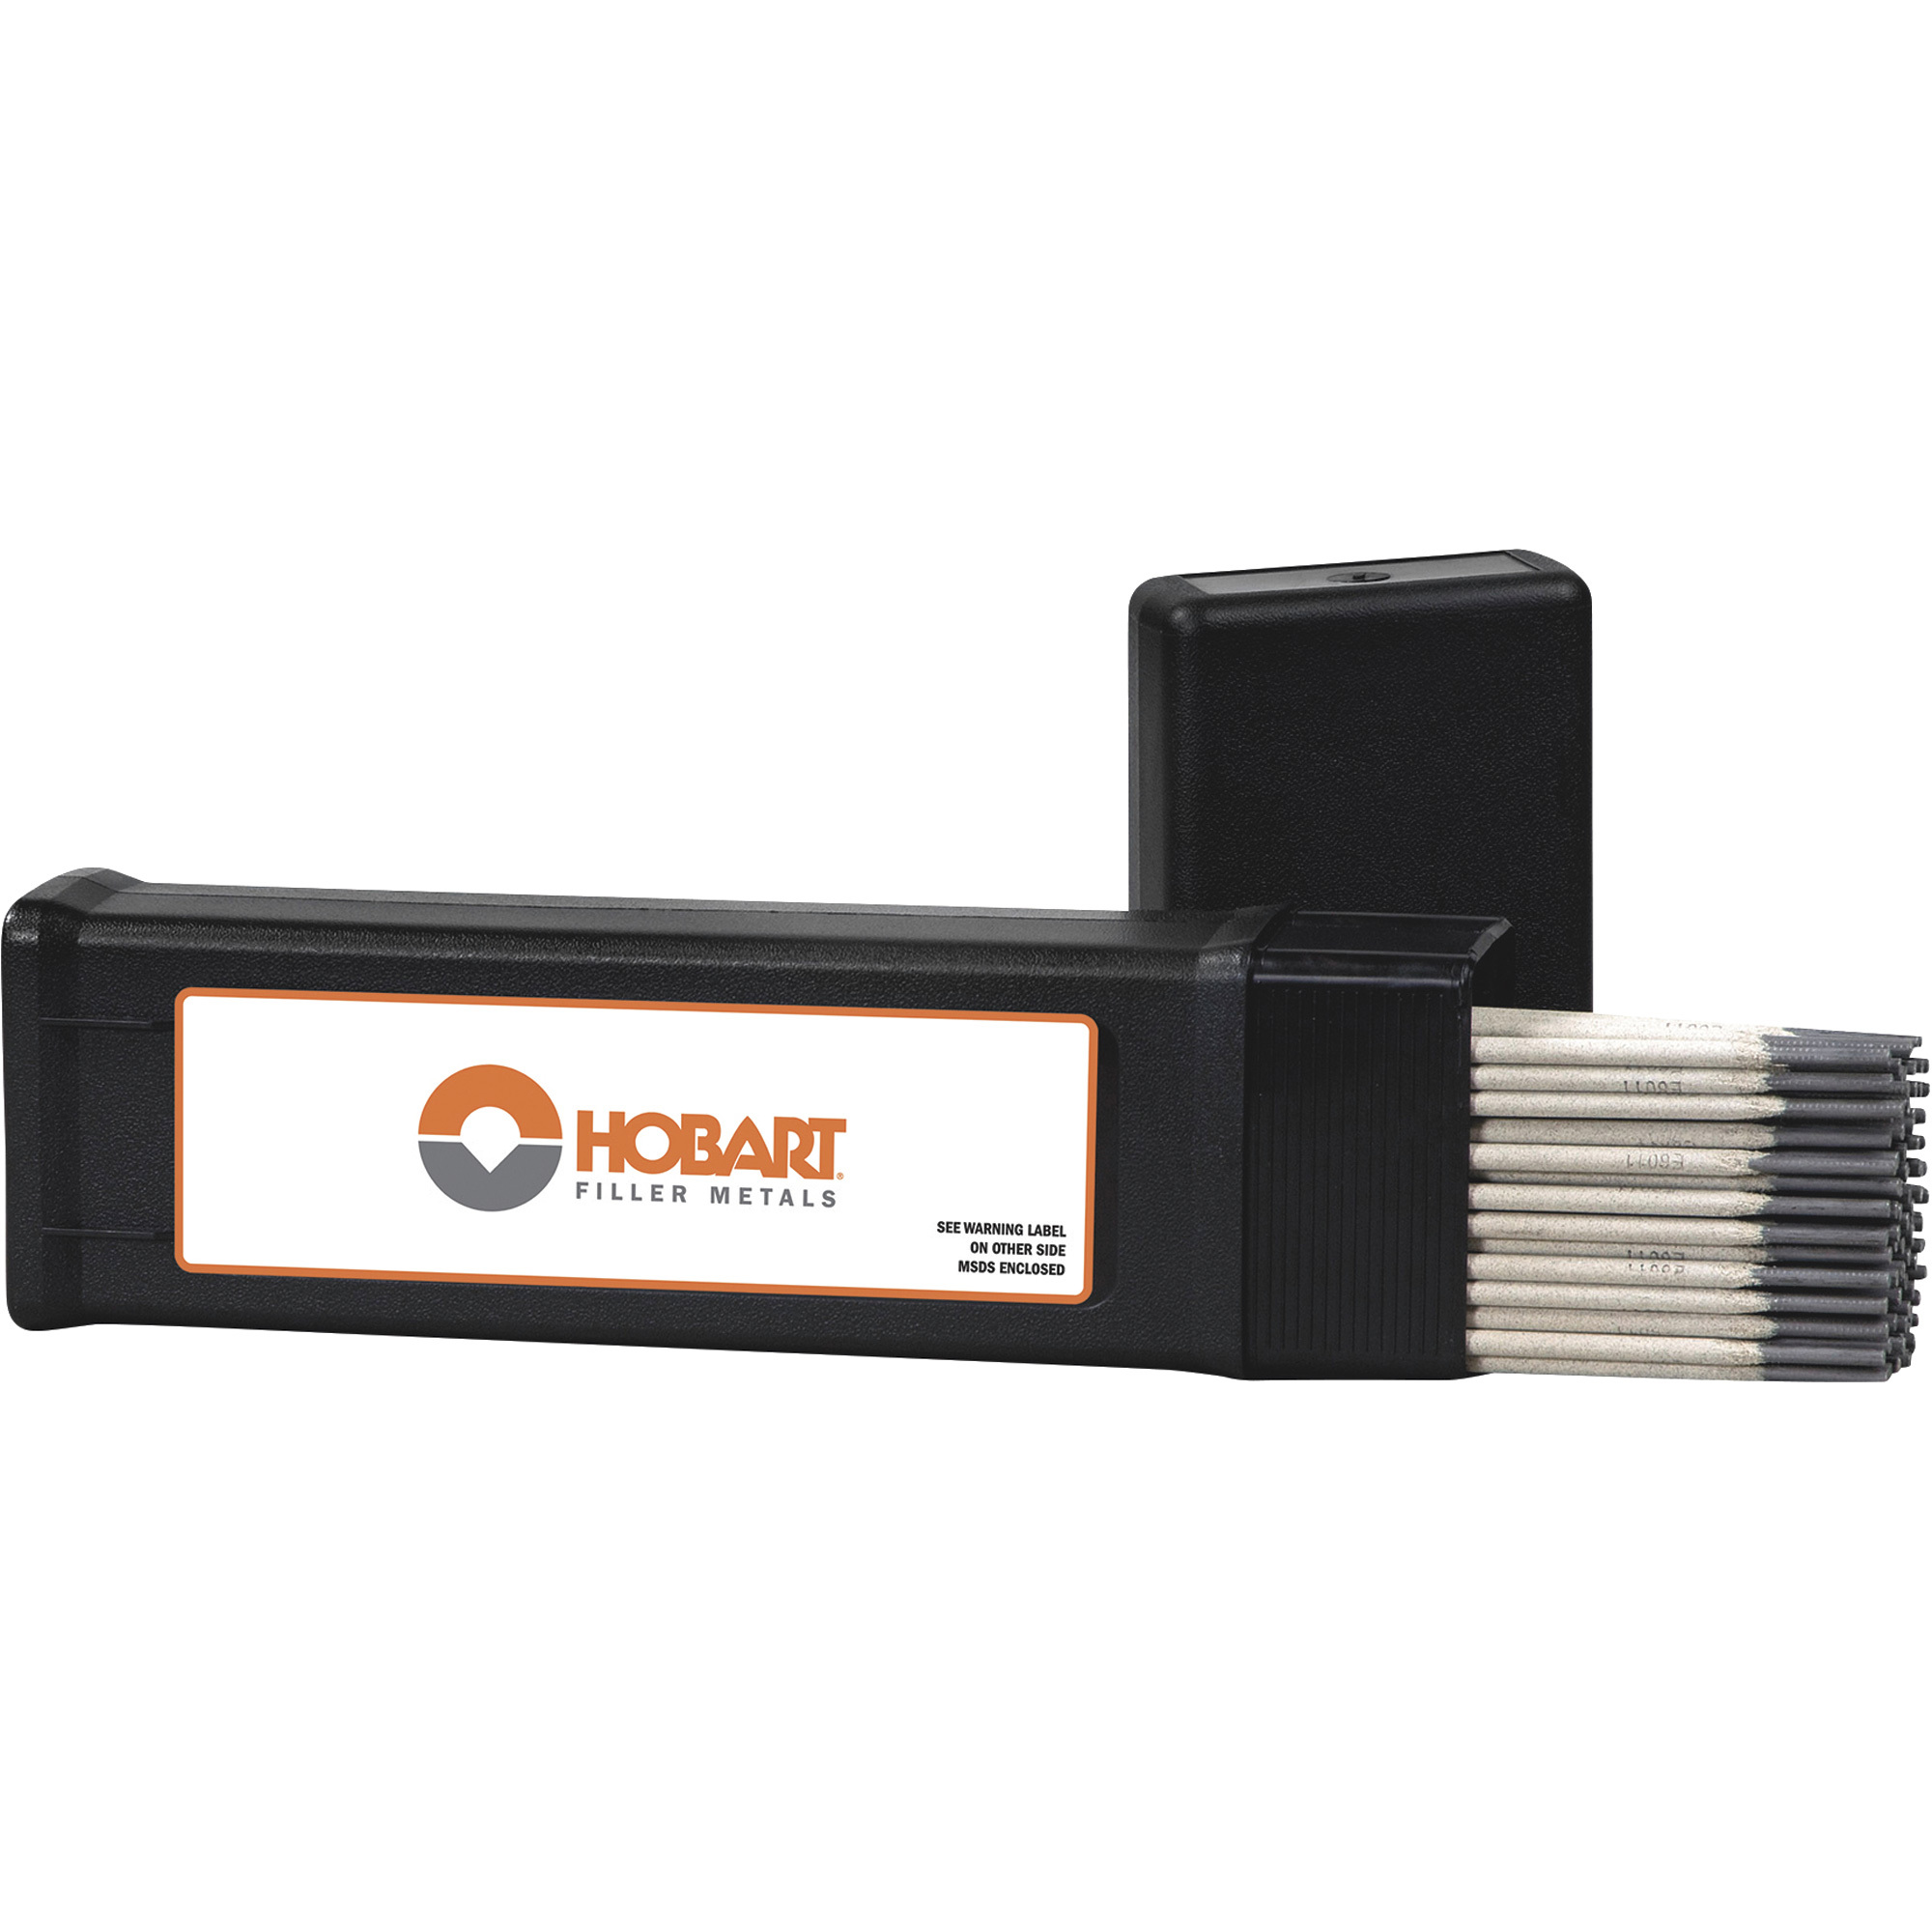 Hobart Filler Metals Stick Welding Electrodes â 6011, 1/8Inch x 14Inch L, 5-Lb. Container, Model 770459